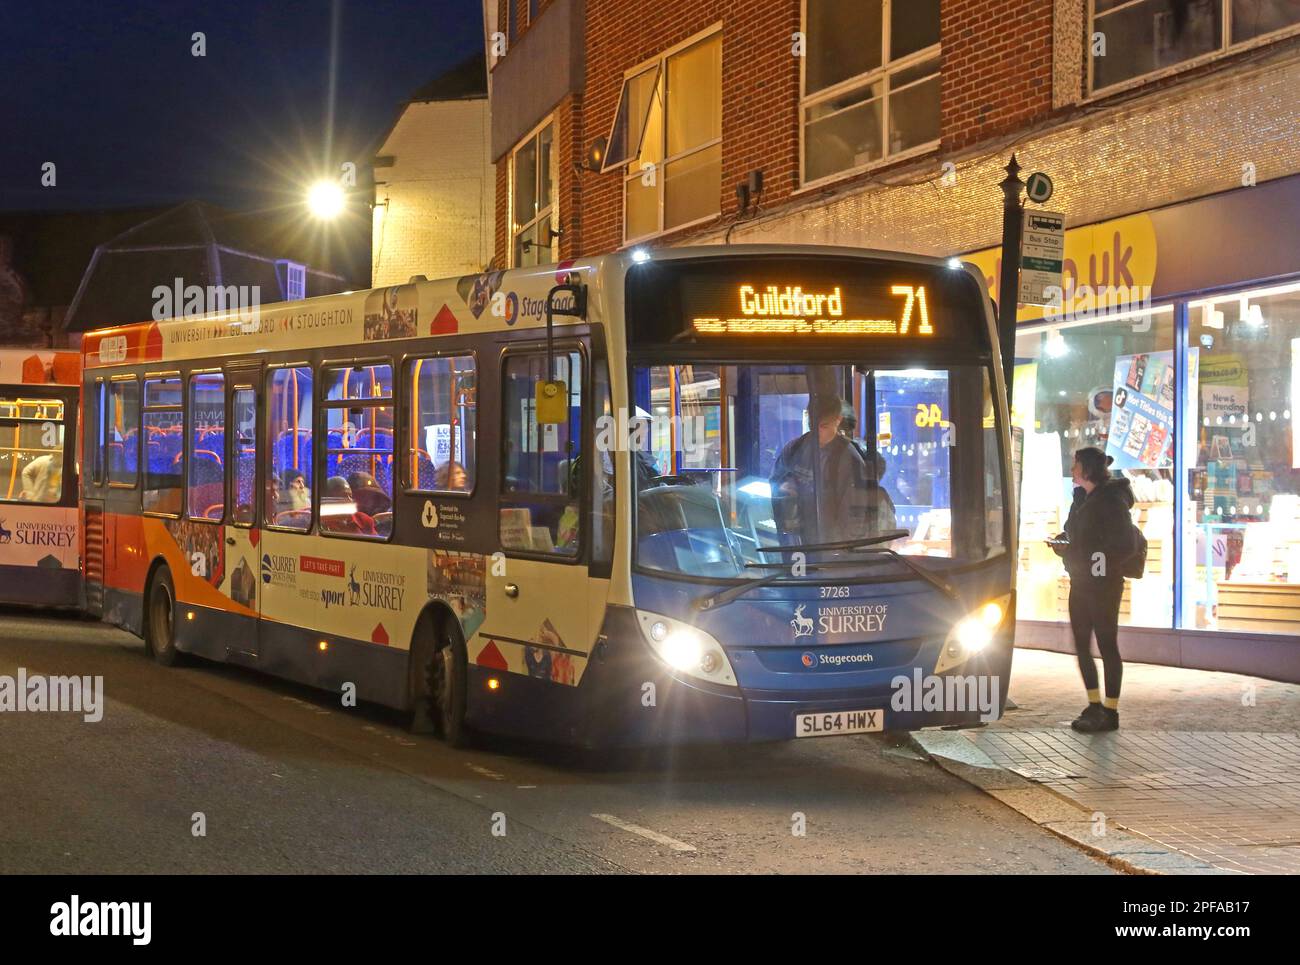 Bustransport in Surrey, Stagecoach Service 71 Midhurst nach Guildford, SL64 HWX, Einheit 37263 im Stadtzentrum von Godalming, Abendservice in der Abenddämmerung Stockfoto